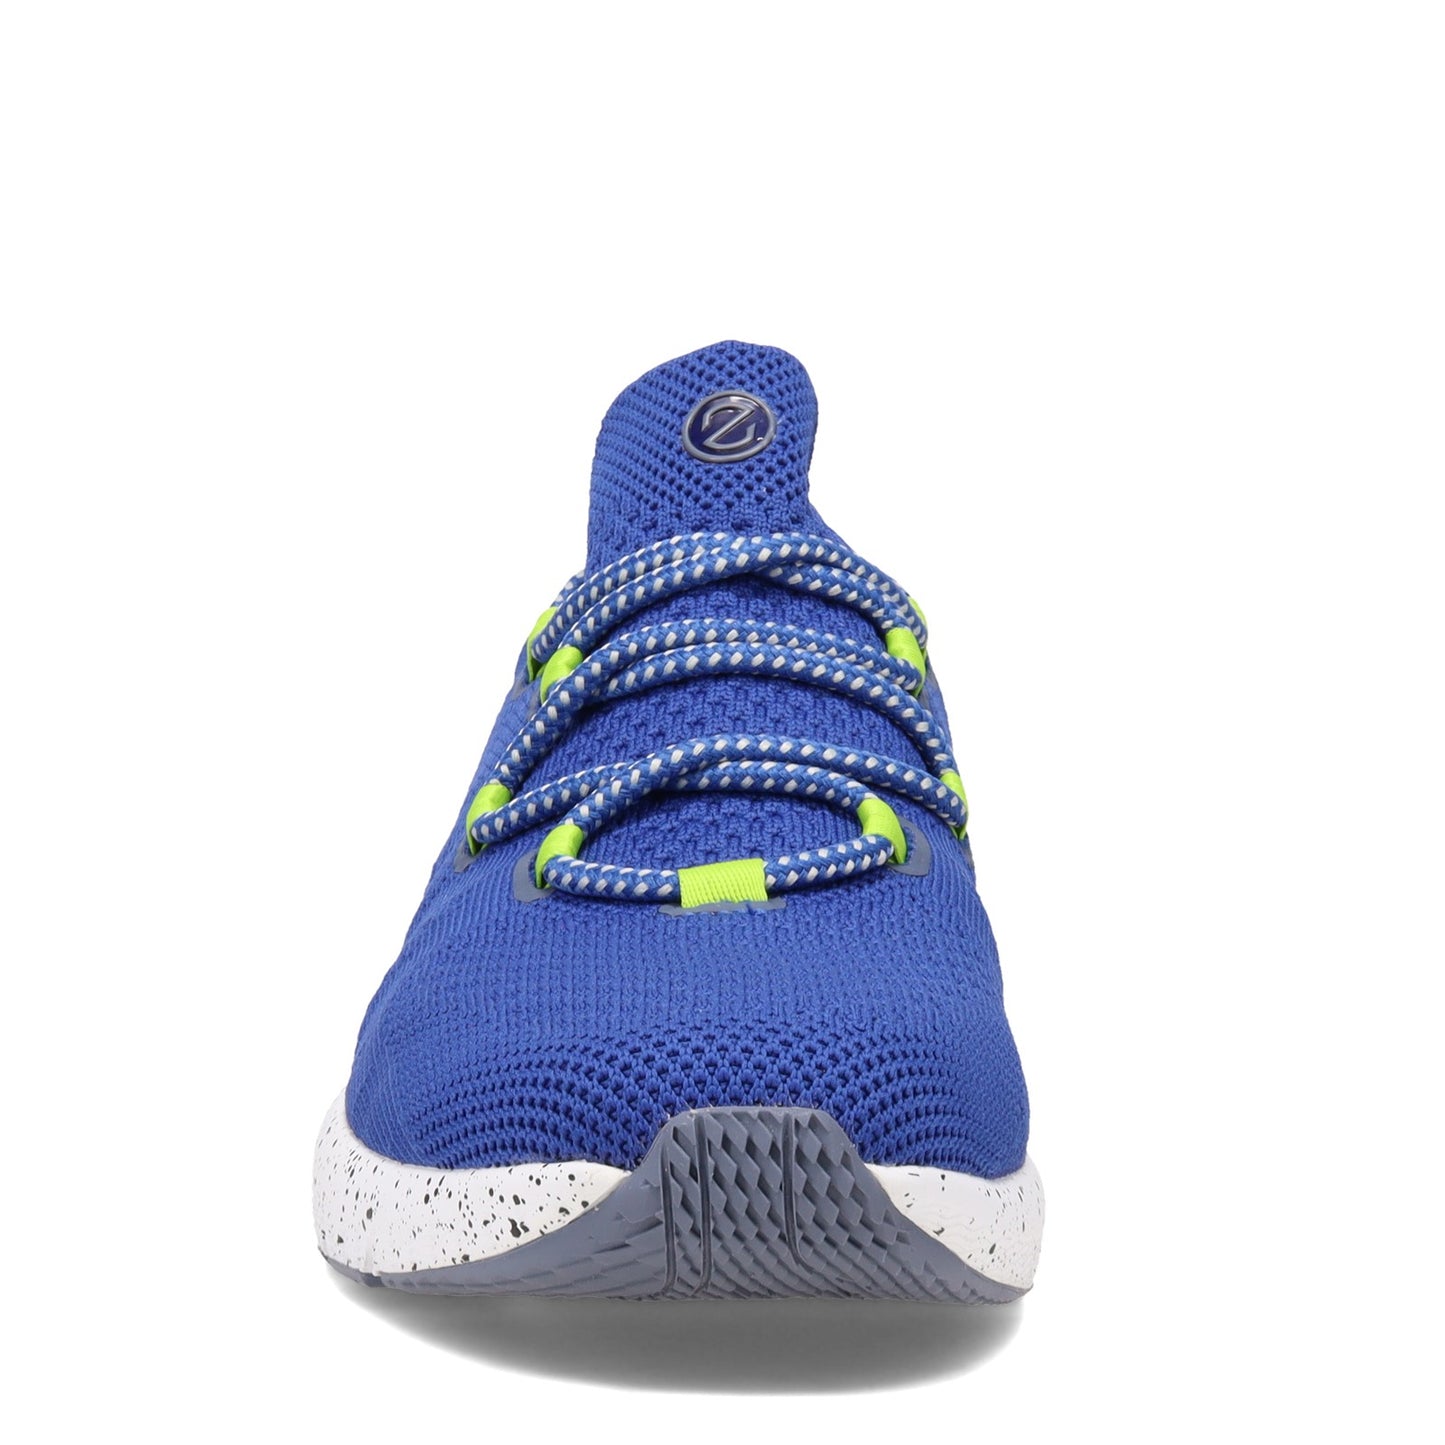 Peltz Shoes  Men's Cole Haan ZEROGRAND Overtake Lite Runner Sneaker PACIFIC BLUE C34249